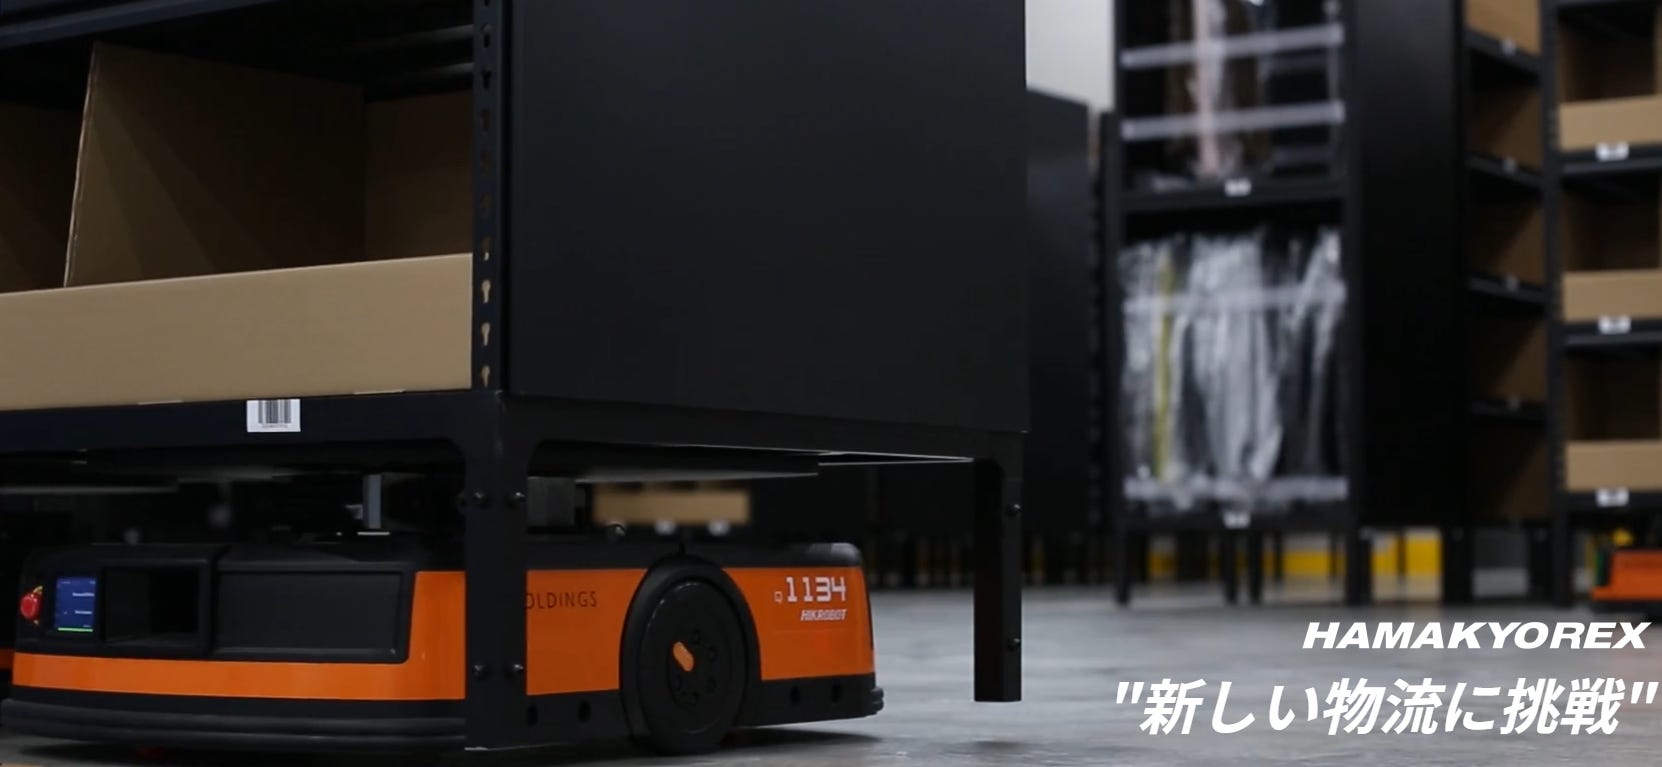 [Podcast] HAMAKYOREX: A Robotics-Focused Shipping & Logistics Company with a P/E of 8!